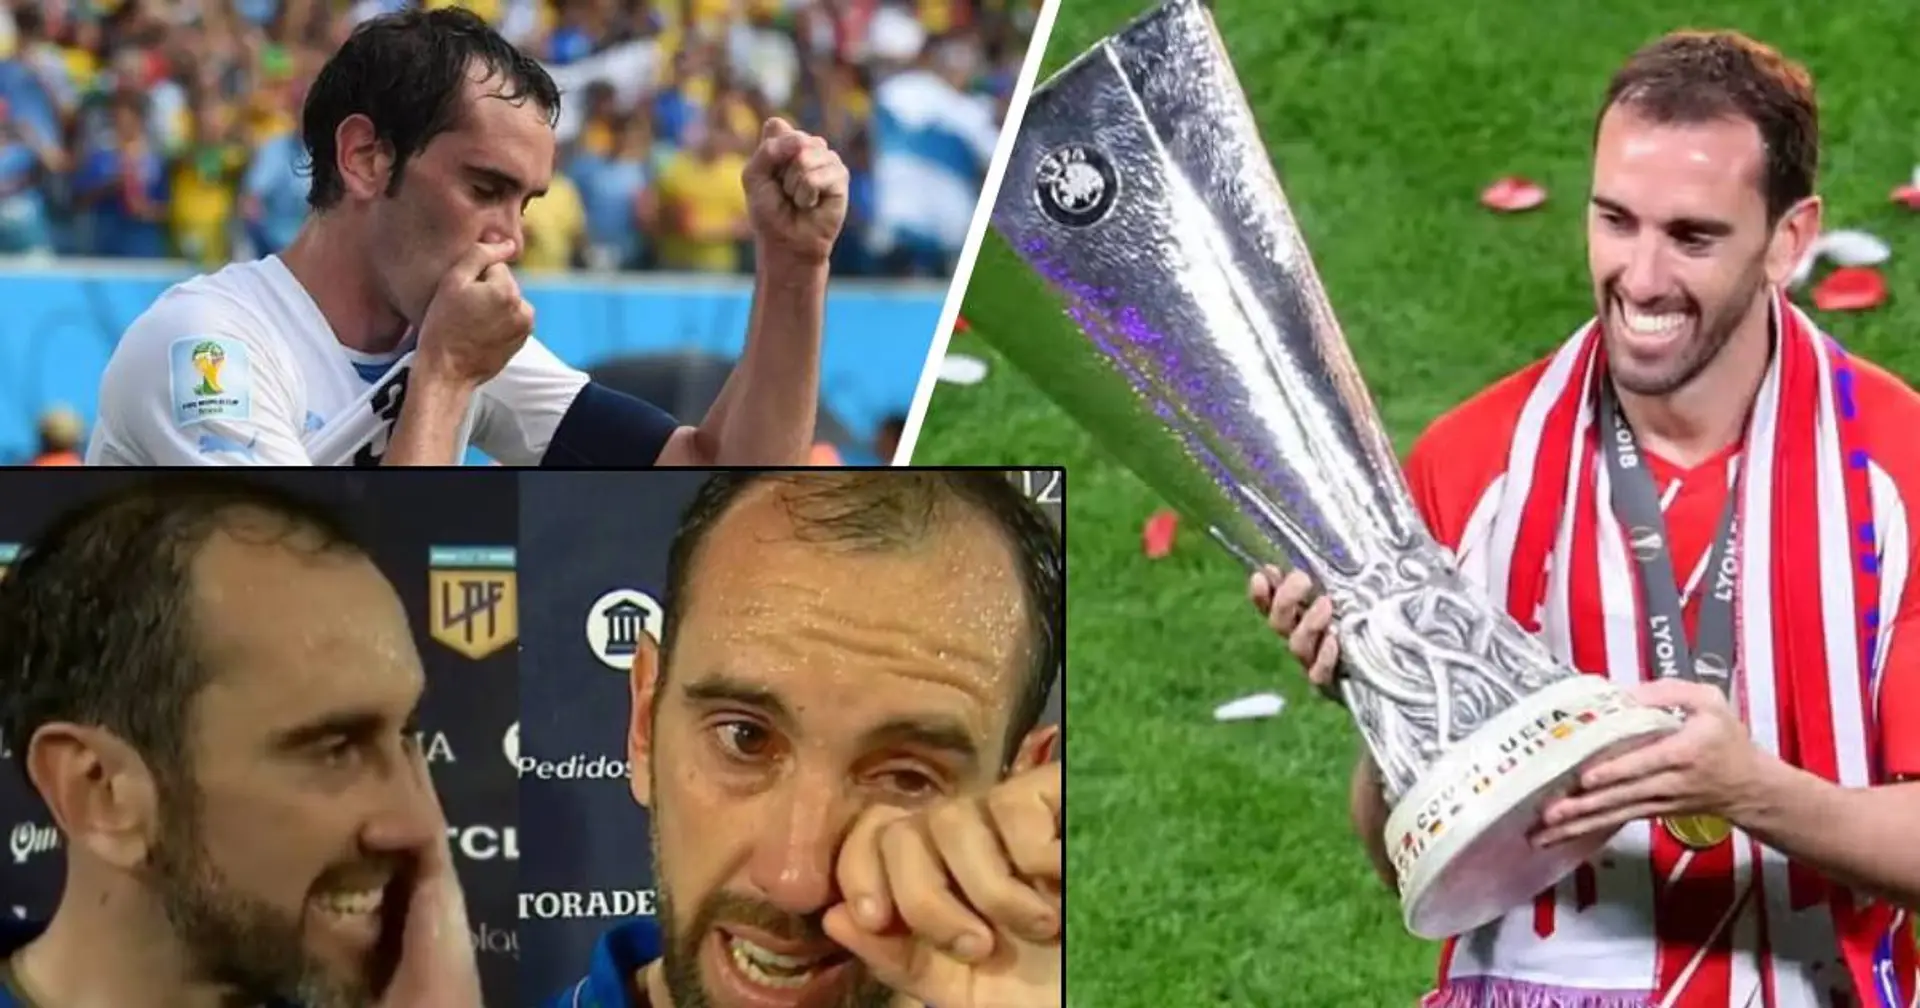 "Je voulais faire comme ça": la légende de l'Atlético Madrid et de l'Uruguay se retire en larmes